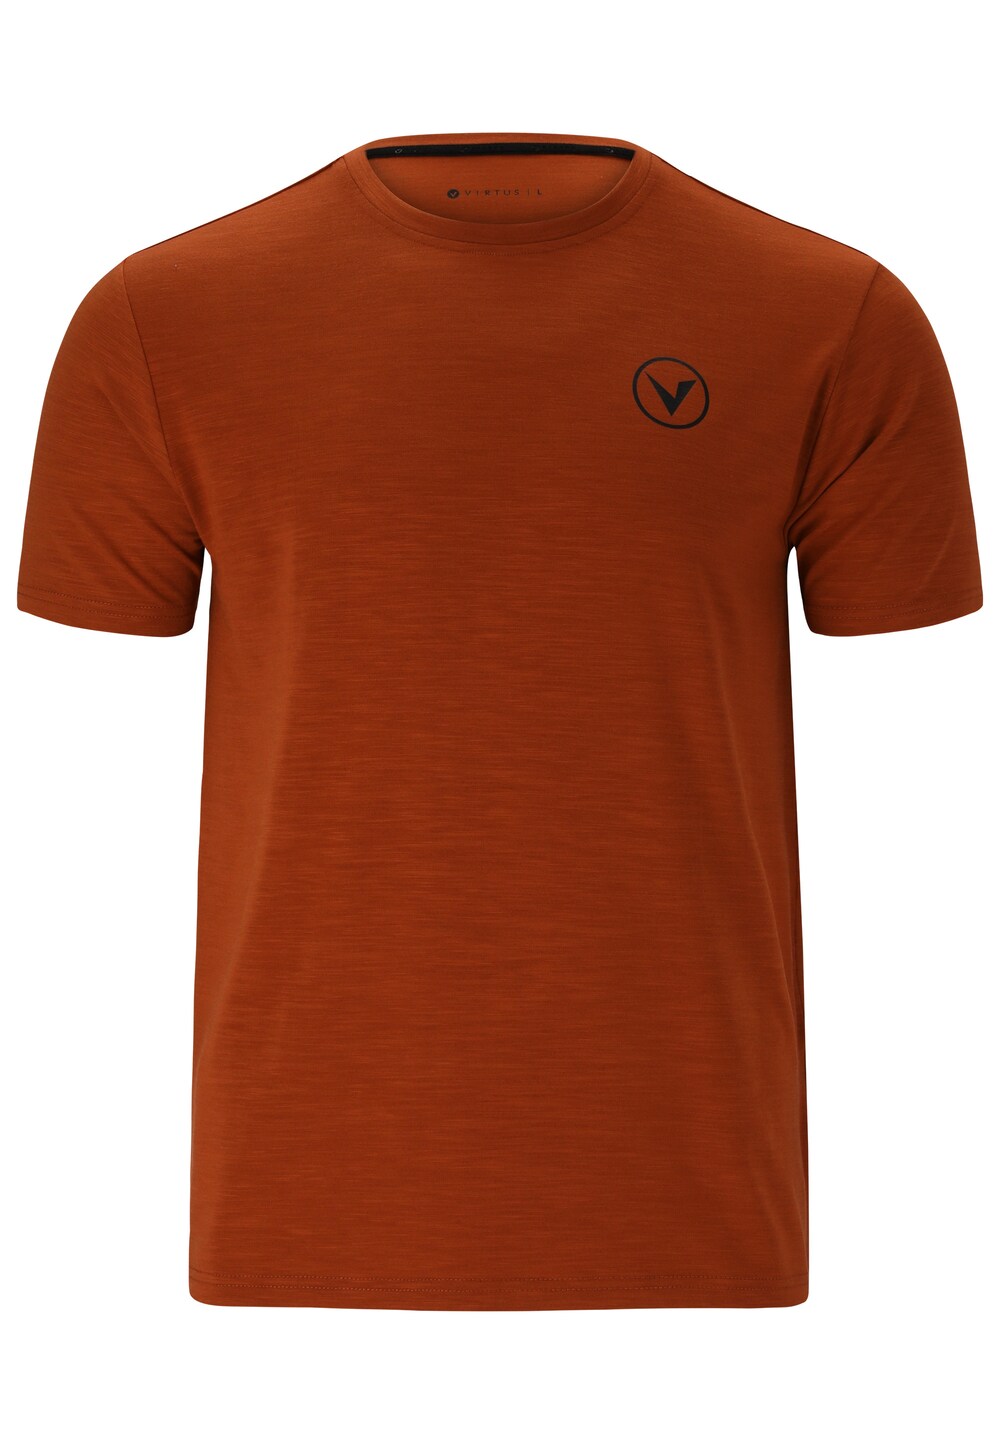 Футболка для выступлений Virtus JOKER, апельсин футболка для выступлений virtus joker апельсин